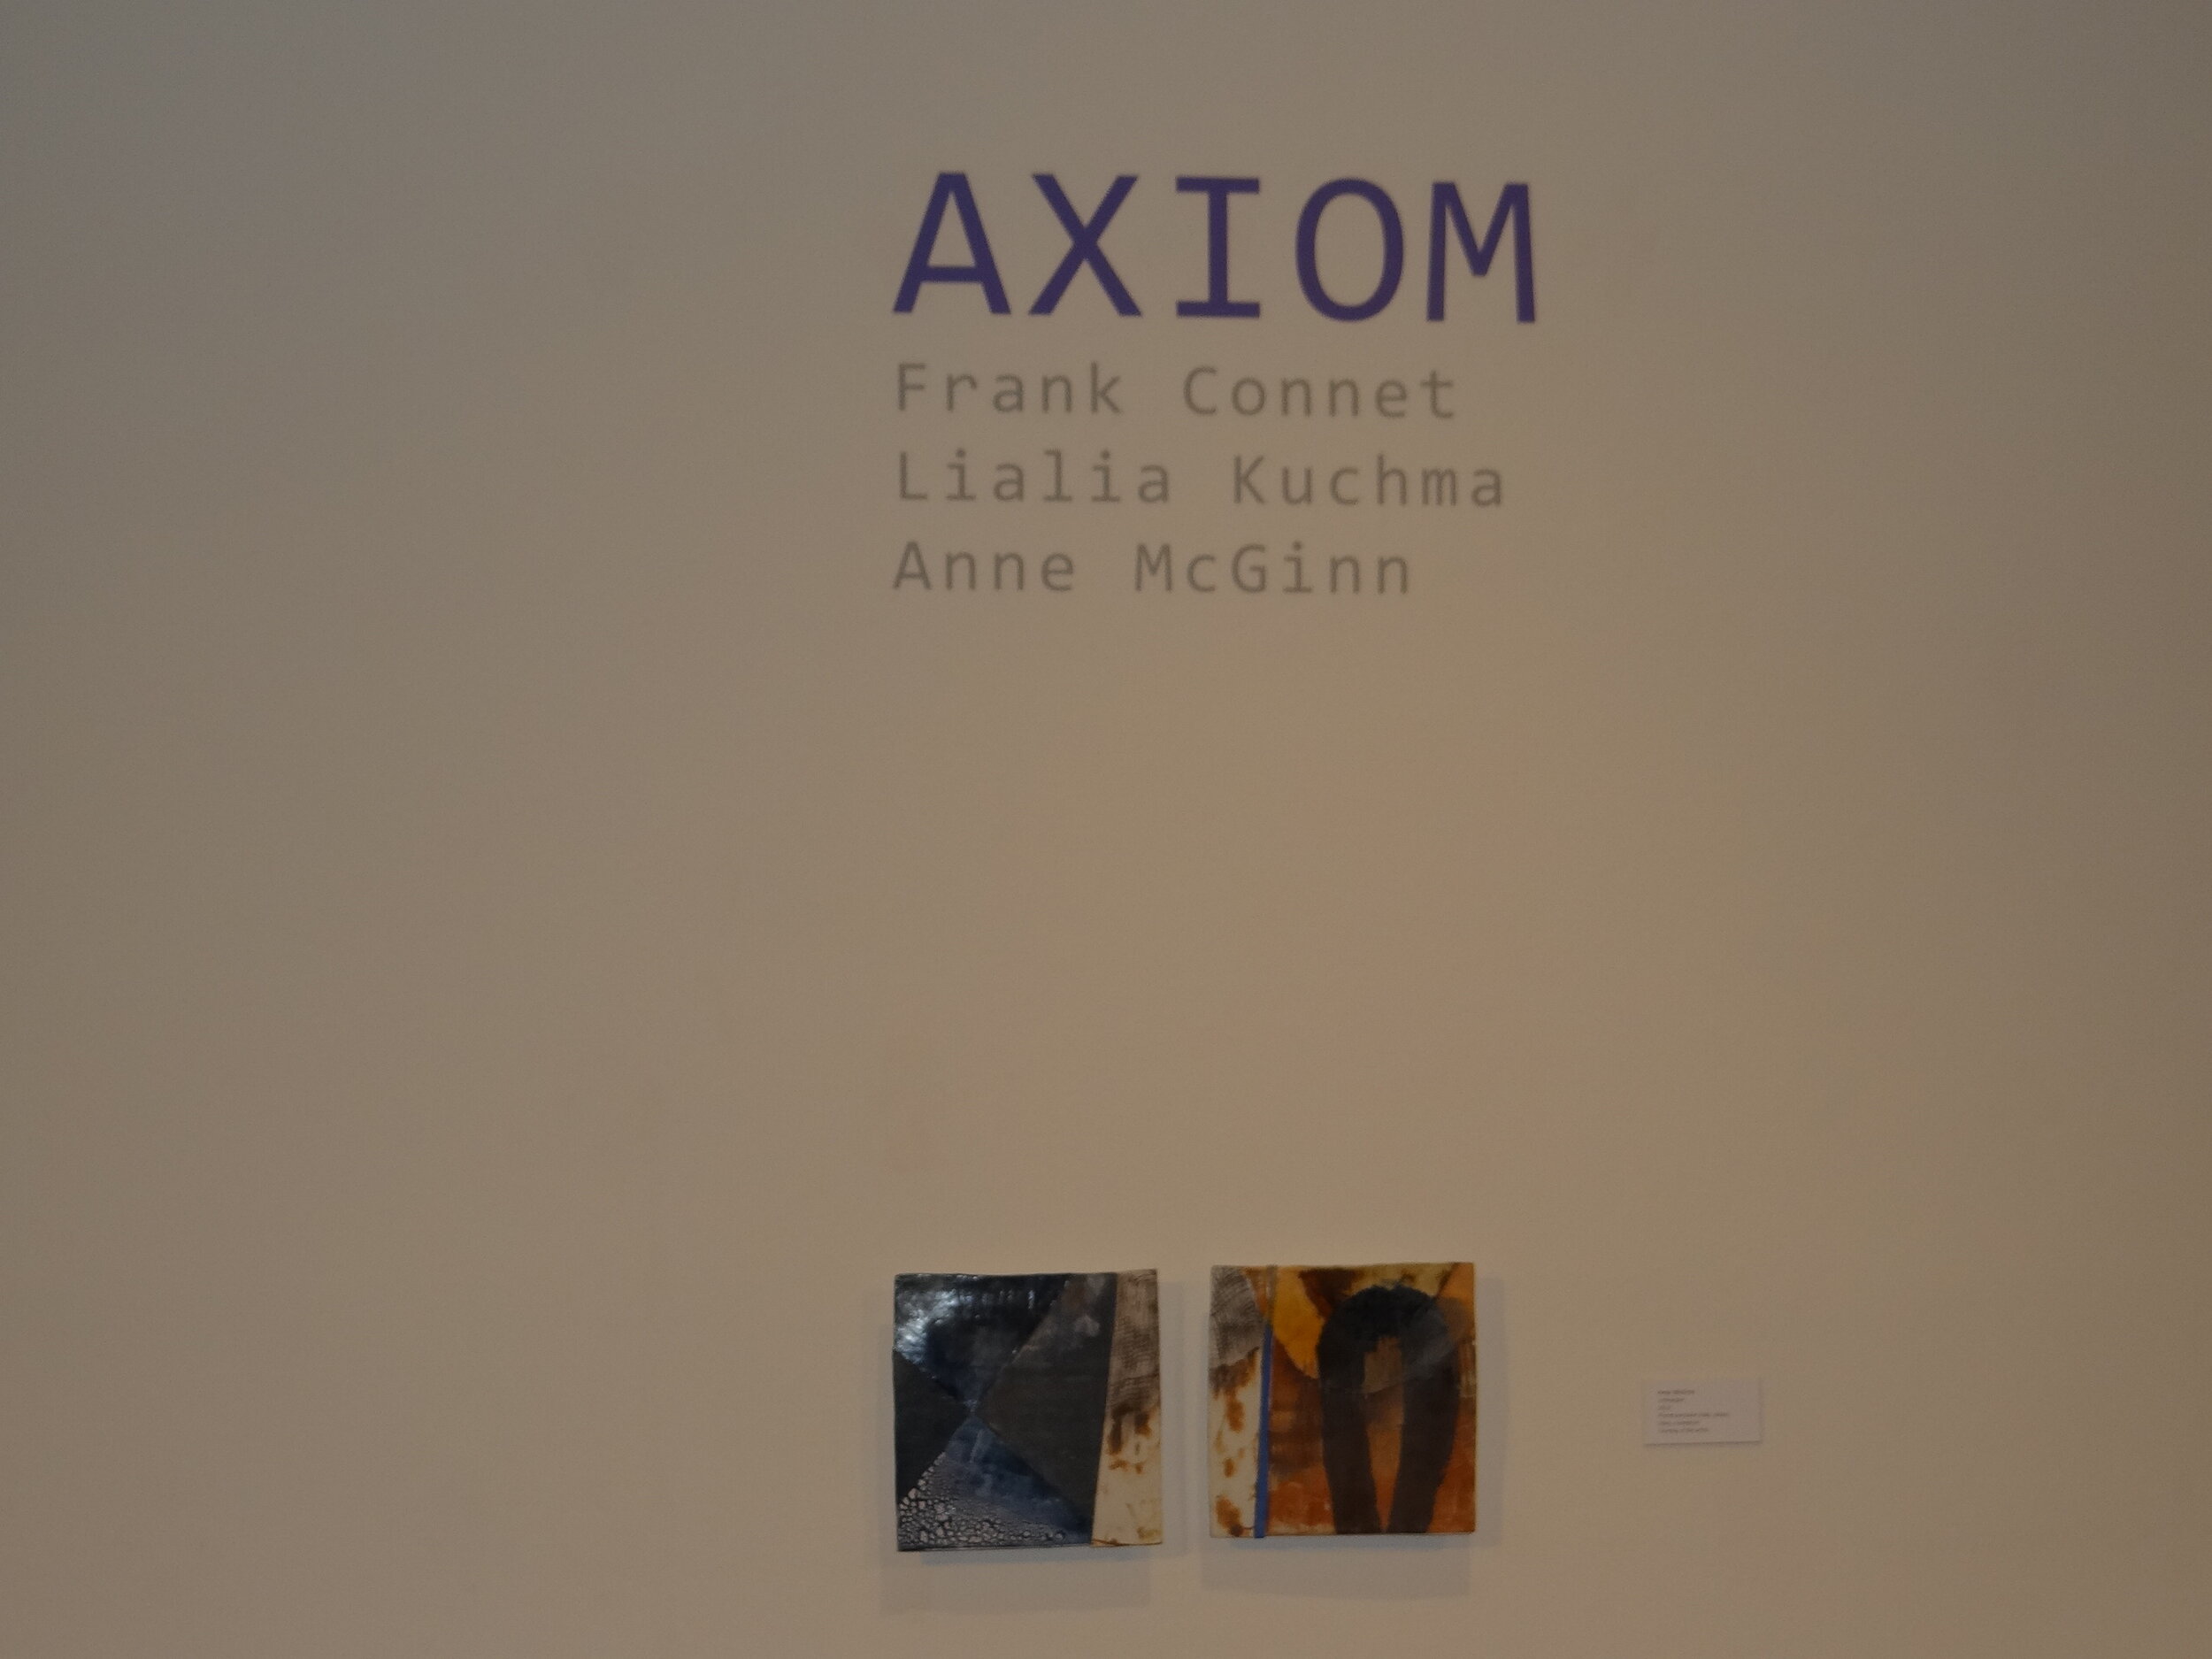 axiom-opening-reception_29756620663_o.jpg